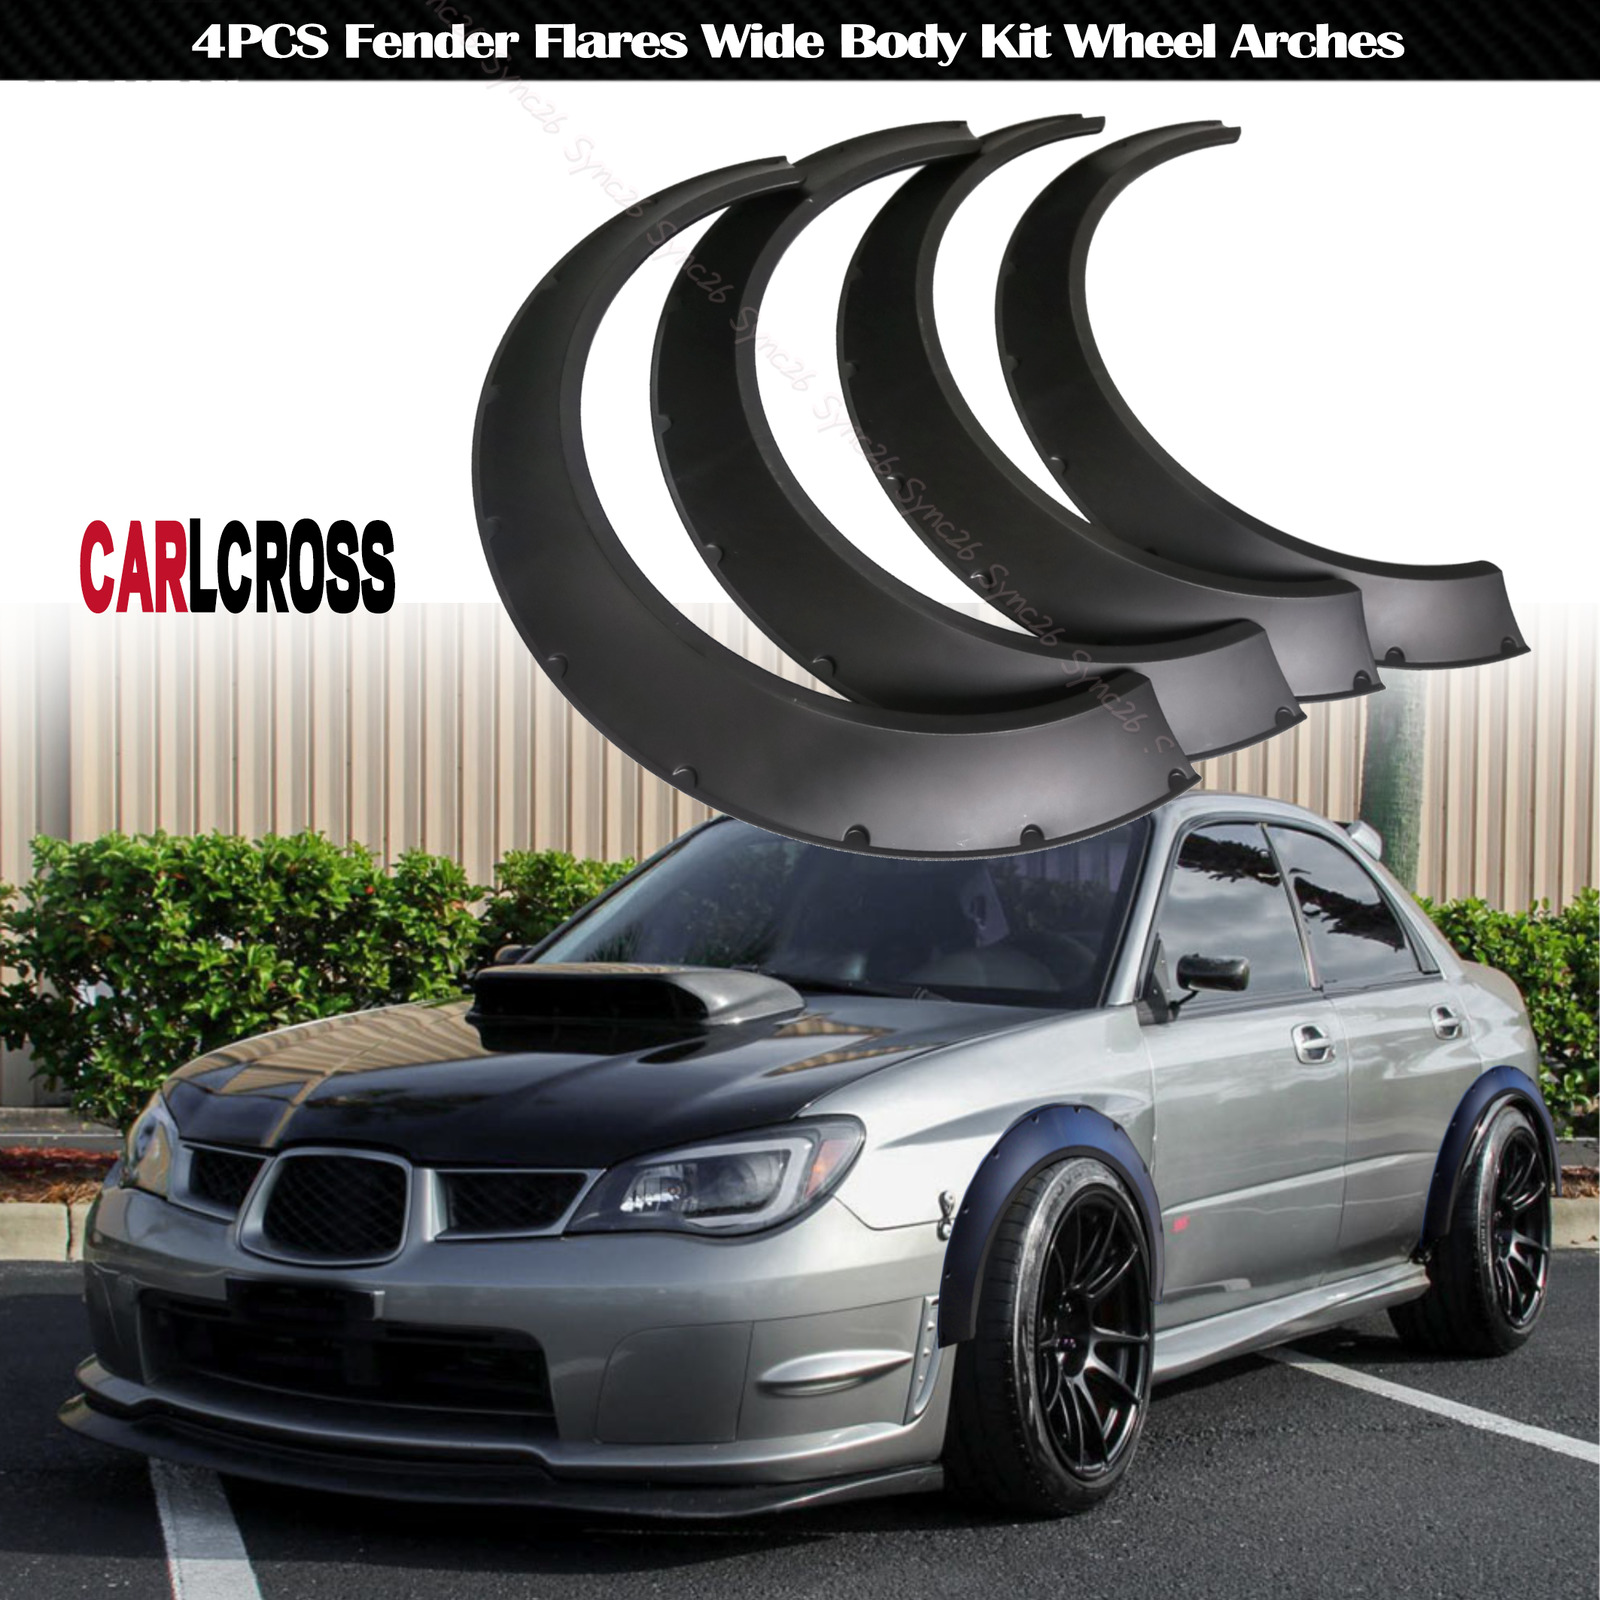 For Subaru Impreza WRX STI 4PCS Fender Flares Wide Body Kit Wheel Arches